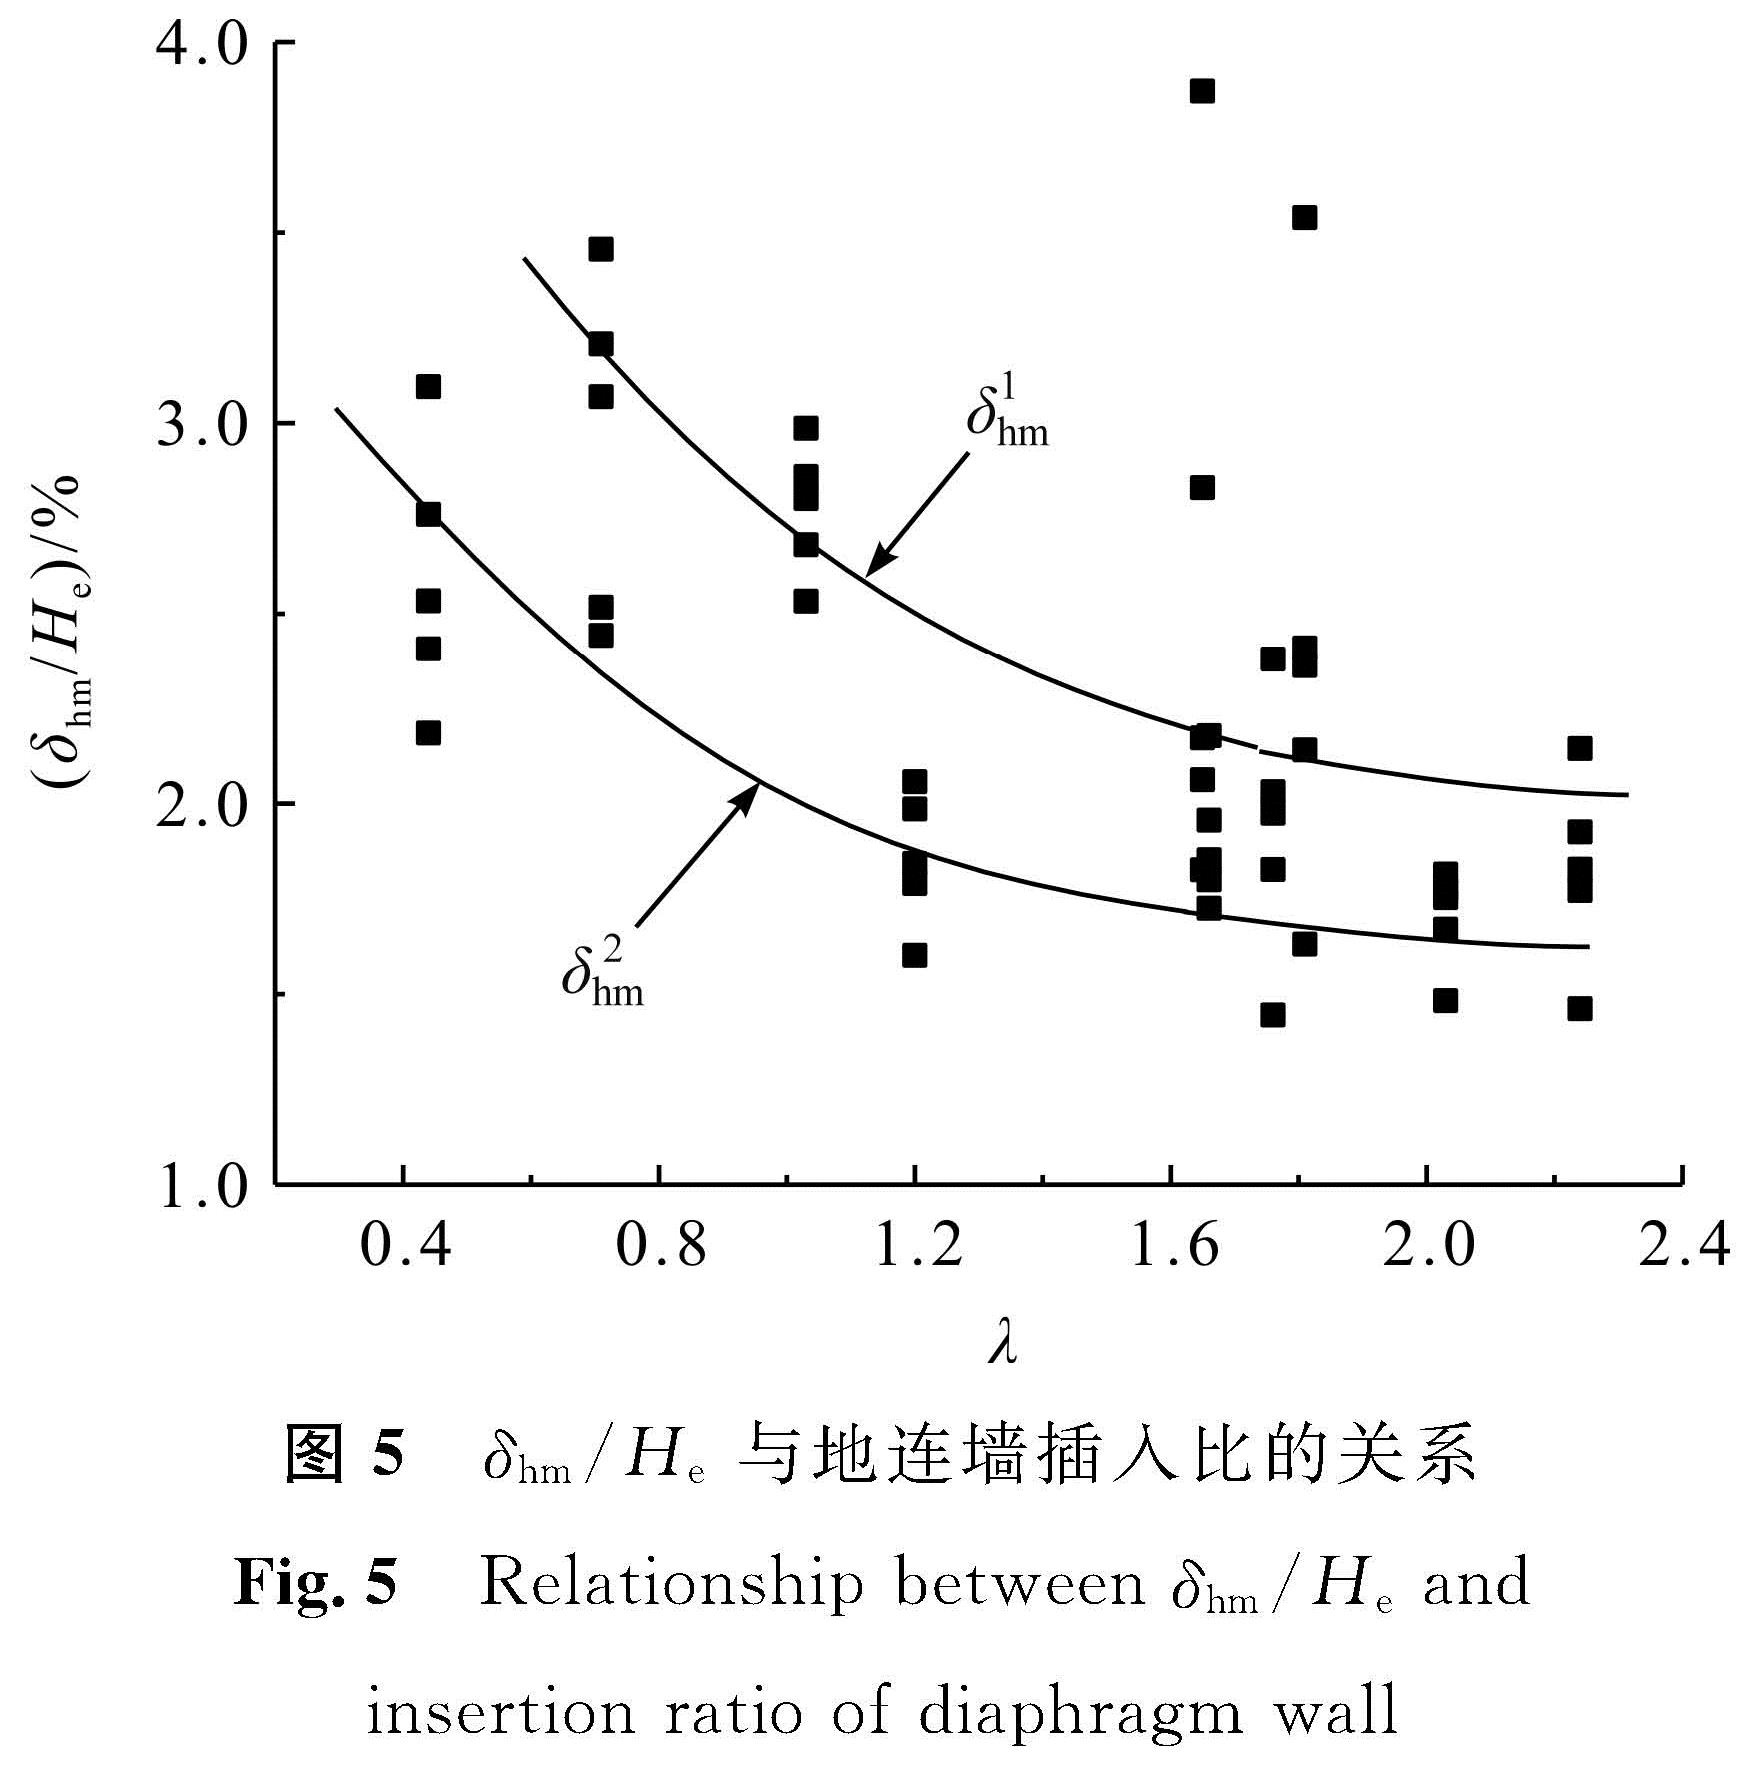 图5 δhm/He与地连墙插入比的关系<br/>Fig.5 Relationship between δhm/He and insertion ratio of diaphragm wall